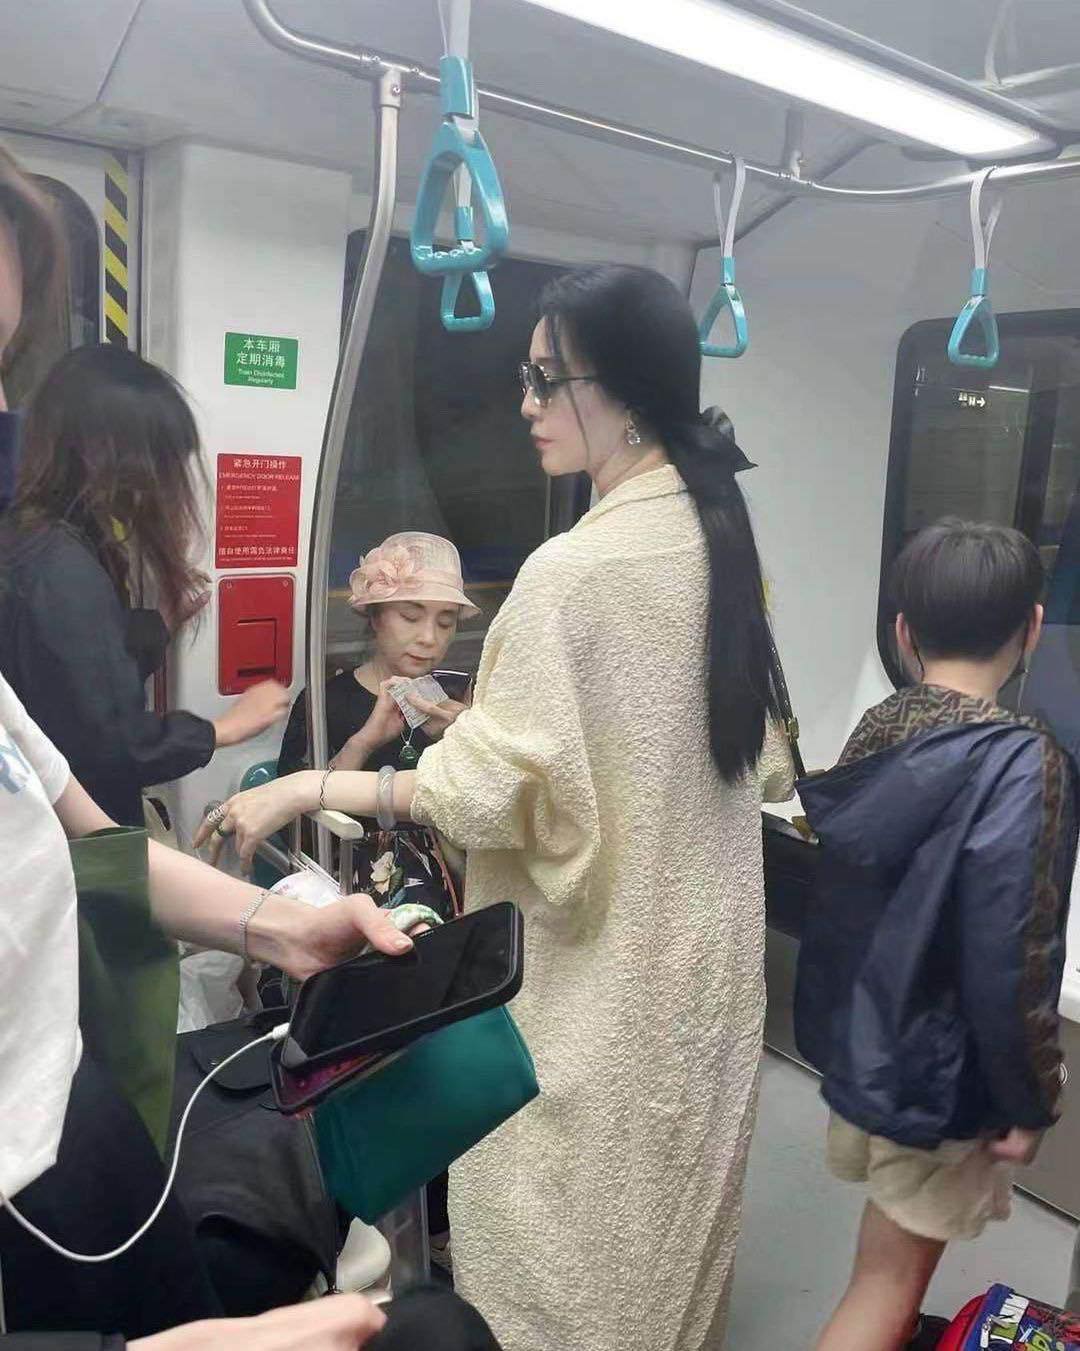 Phạm Băng Băng "gây sốt" khi bị chụp lén trên tàu điện ngầm. Đây không phải là lần đầu tiên nữ diễn viên nhận được nhiều lời tán thưởng với hình ảnh qua ống kính camera thường.